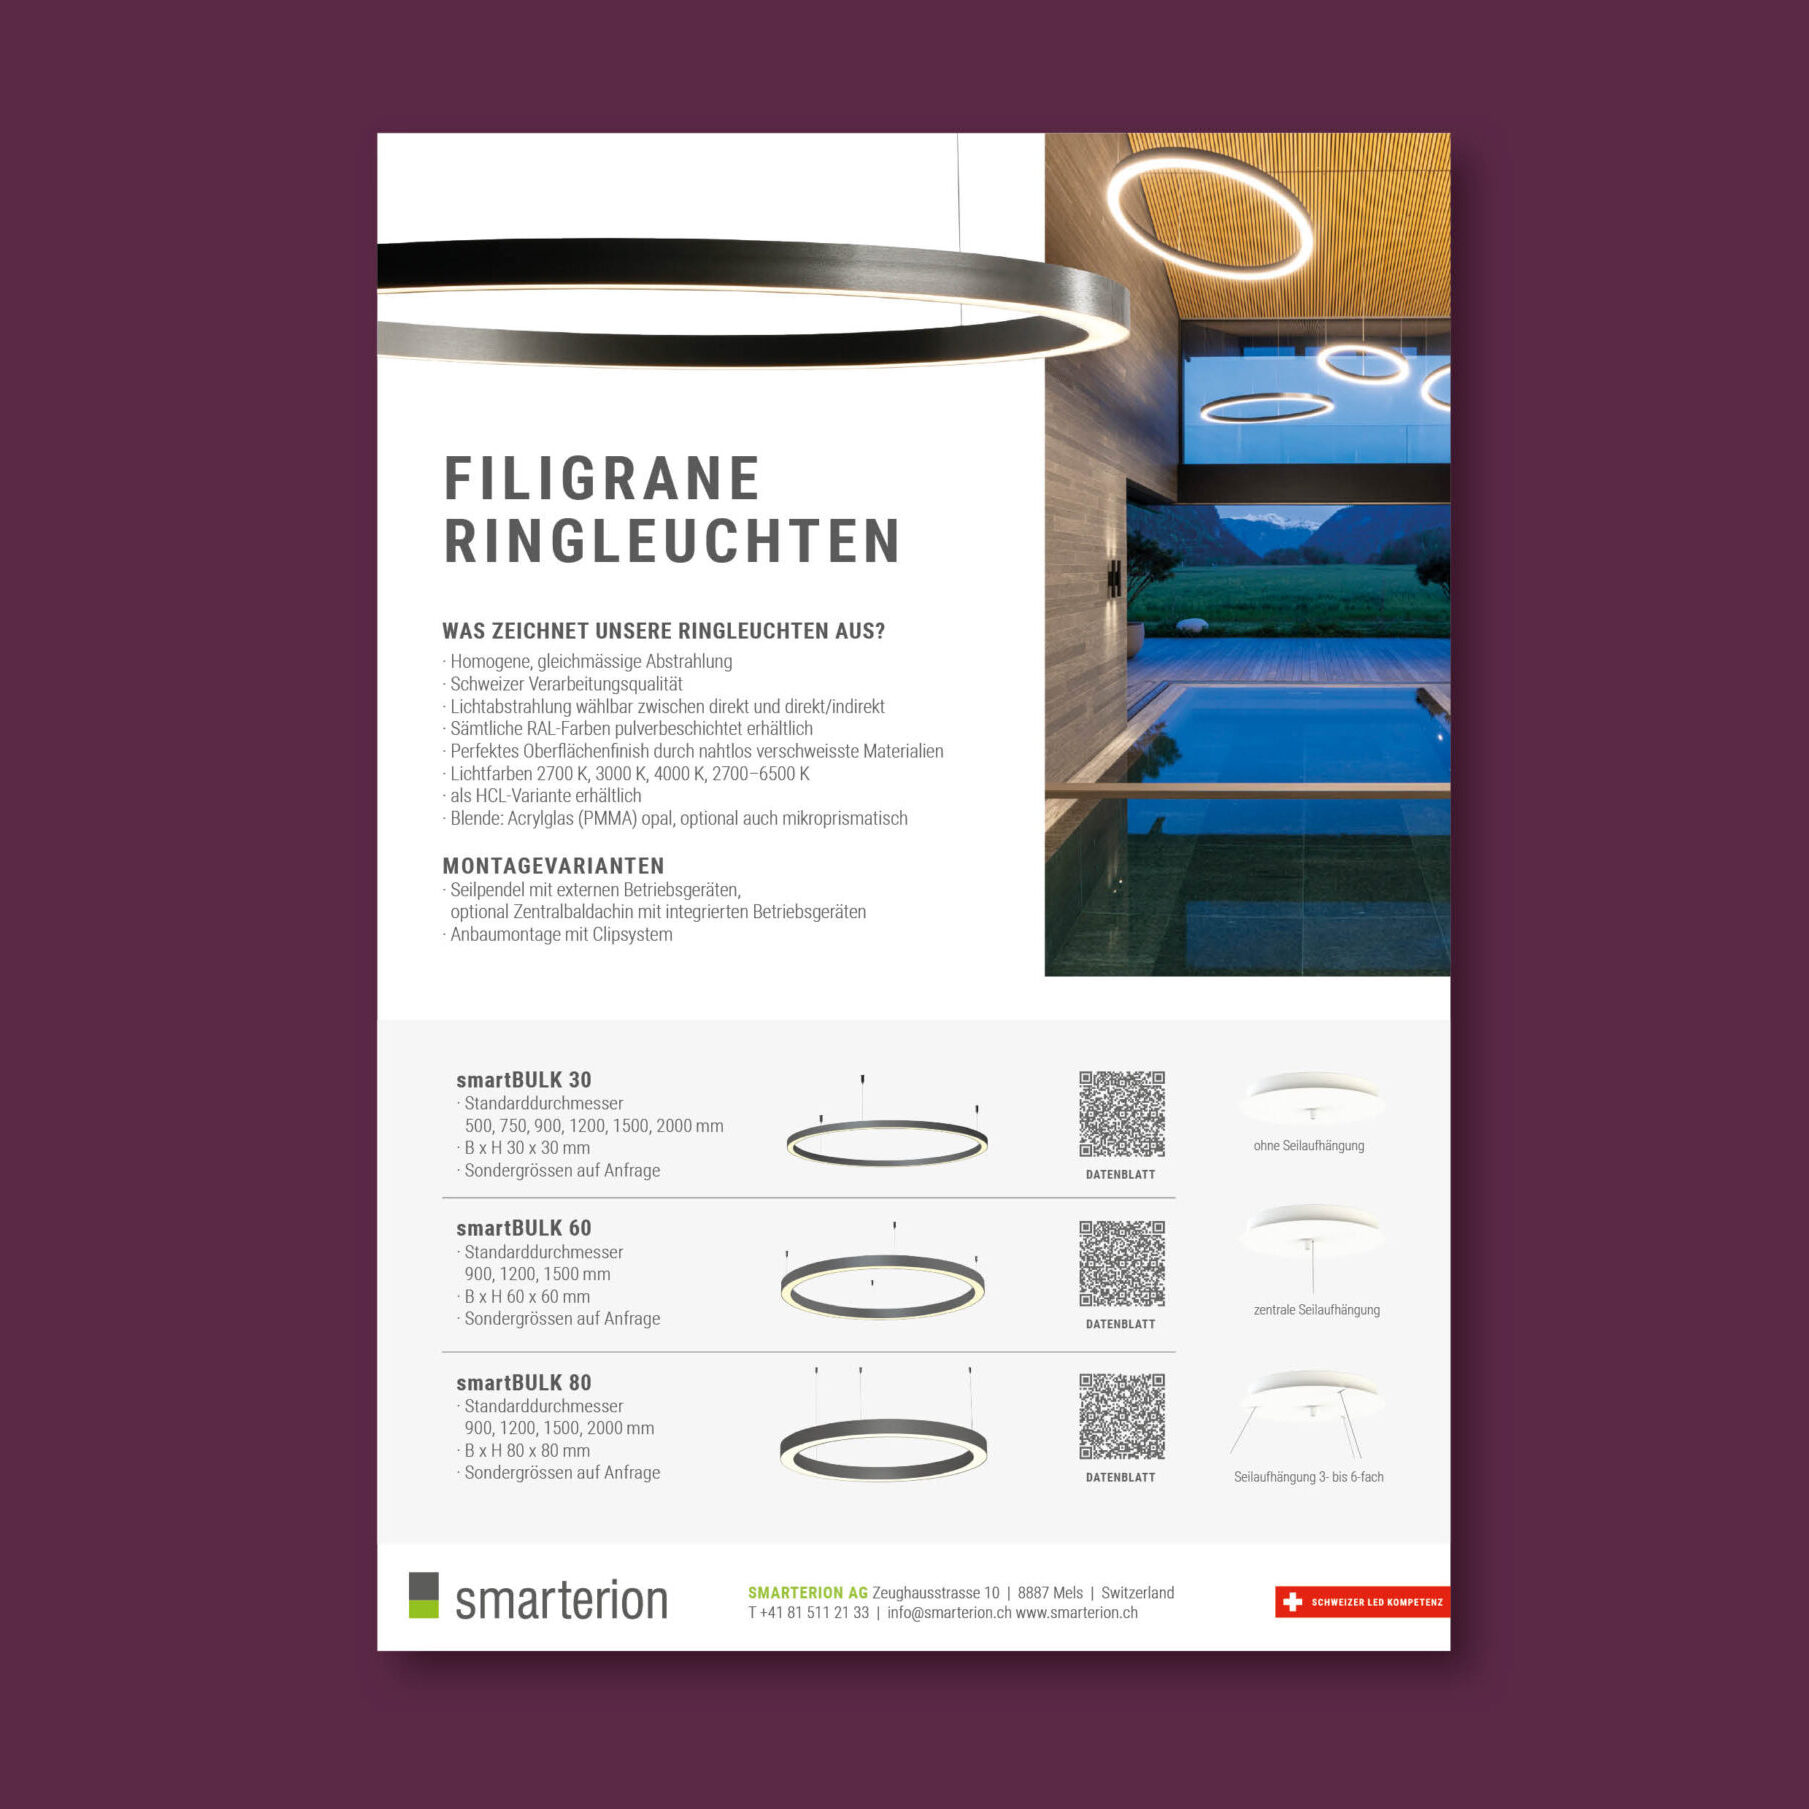 Ein Inserat Design für Filigrane Ringleuchten von Smaterion, gestaltet von Chiara Joos Design aus Chur.